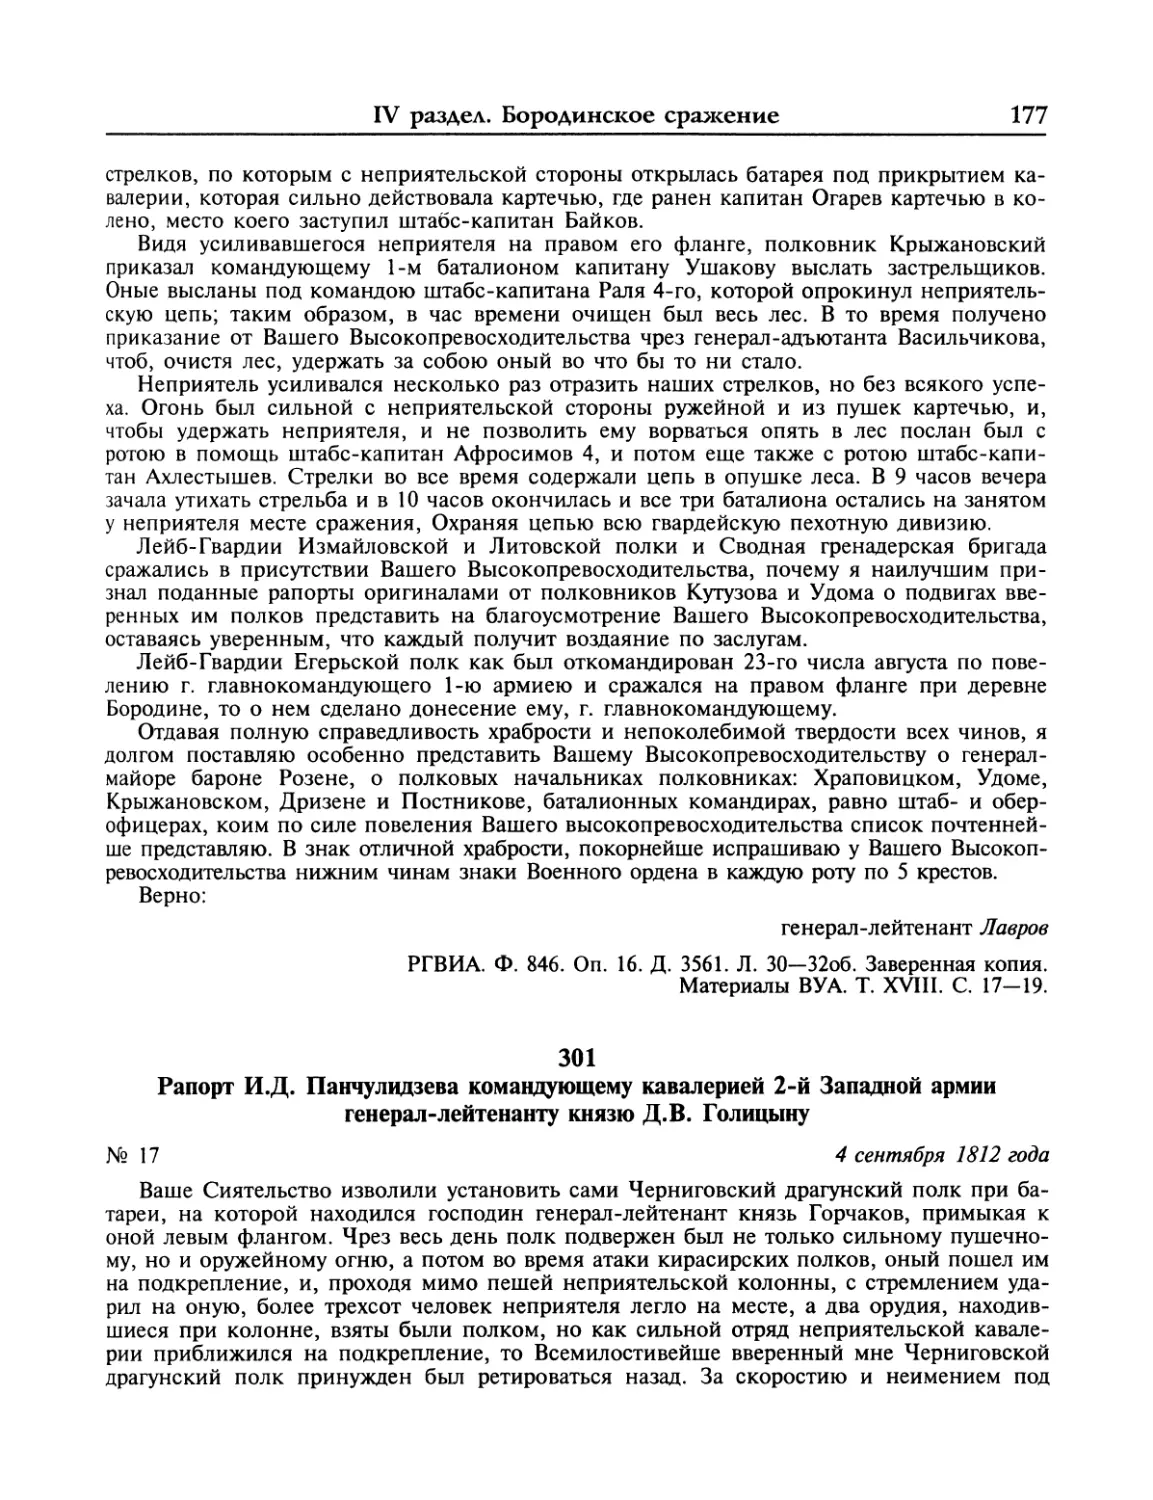 Рапорт И.Д.Панчулидзева Д.В.Голицыну